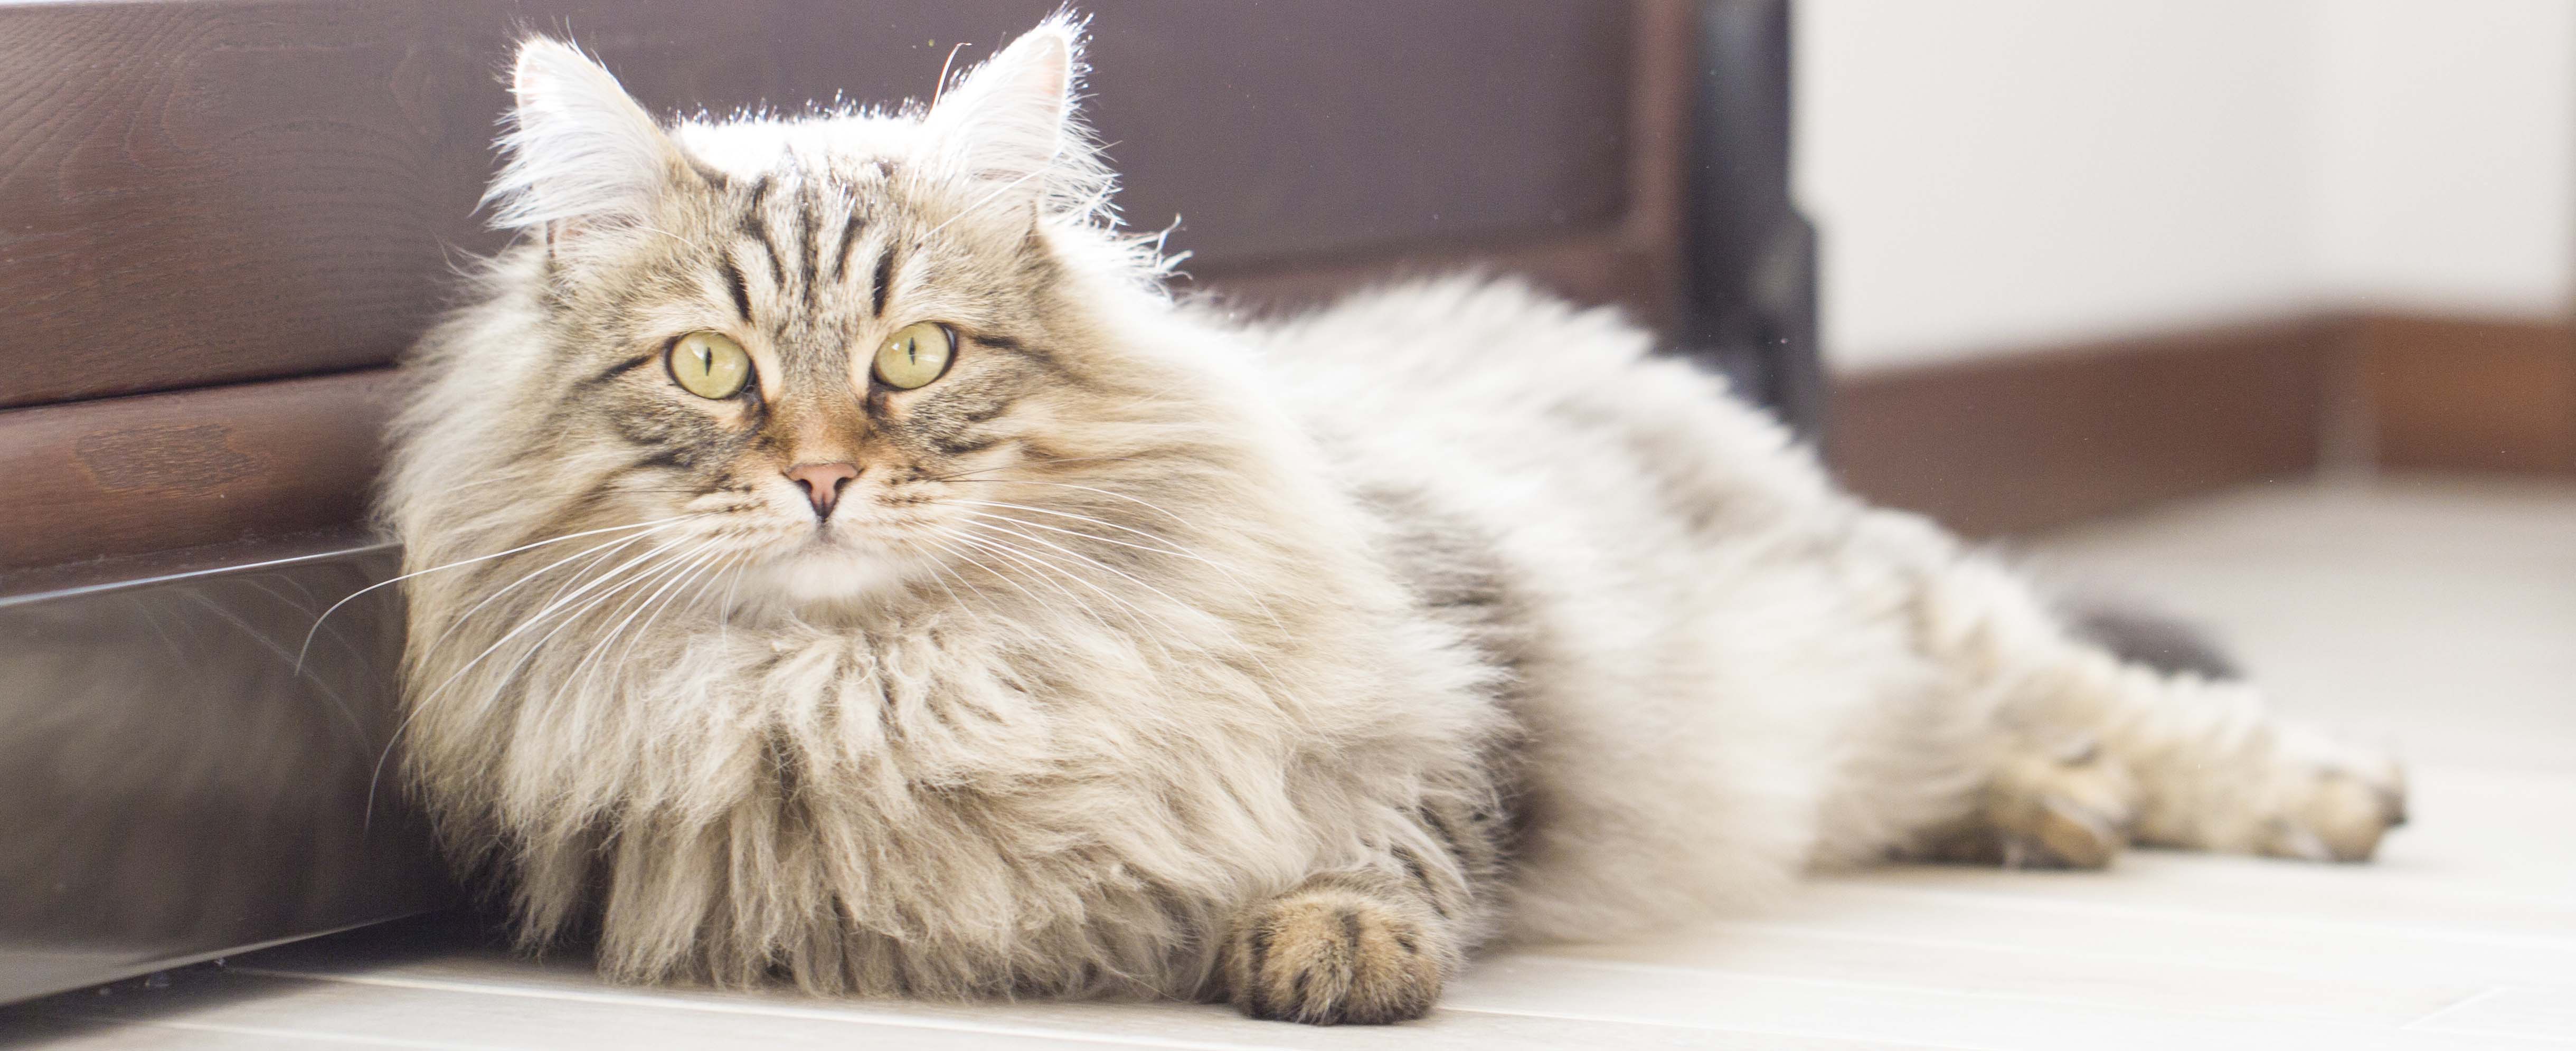 sibirische katze langgestreckt auf dem boden liegend